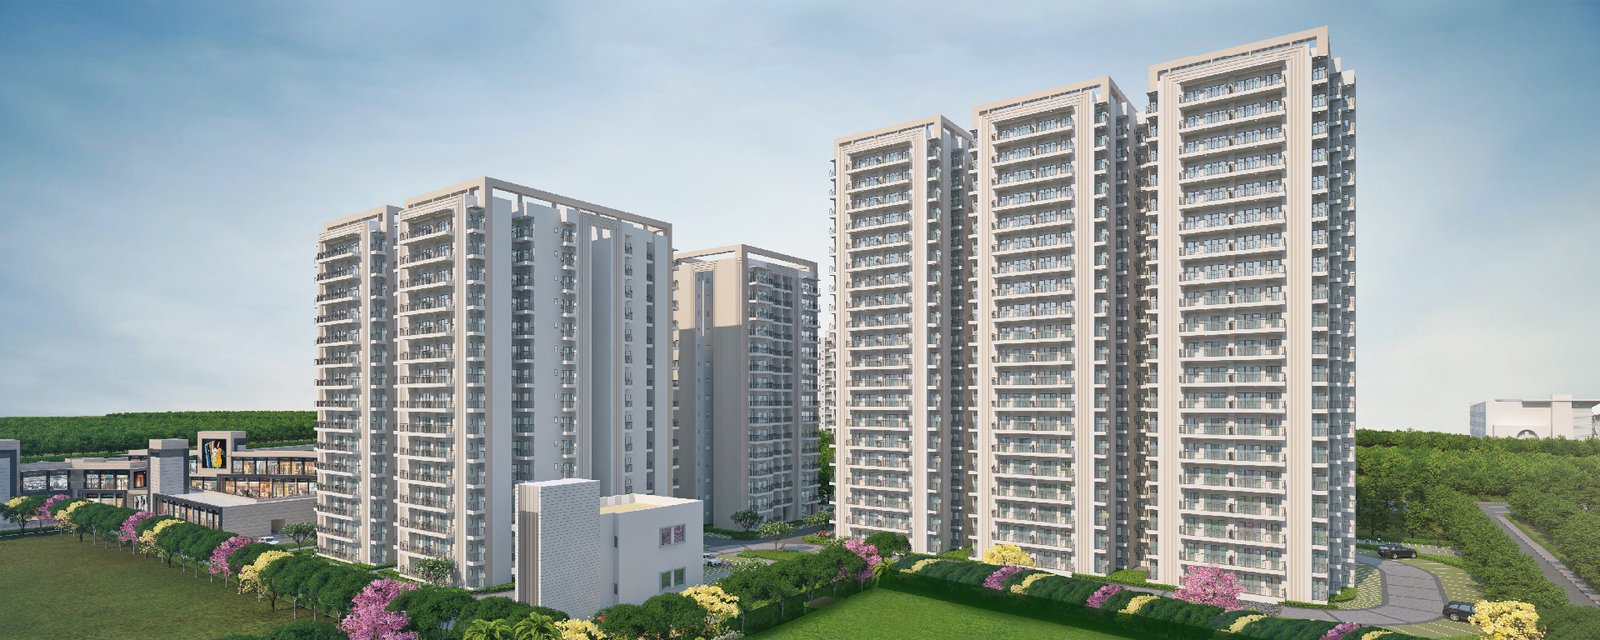 MRG Primark Affordable Housing Sector 90 Gurgaon